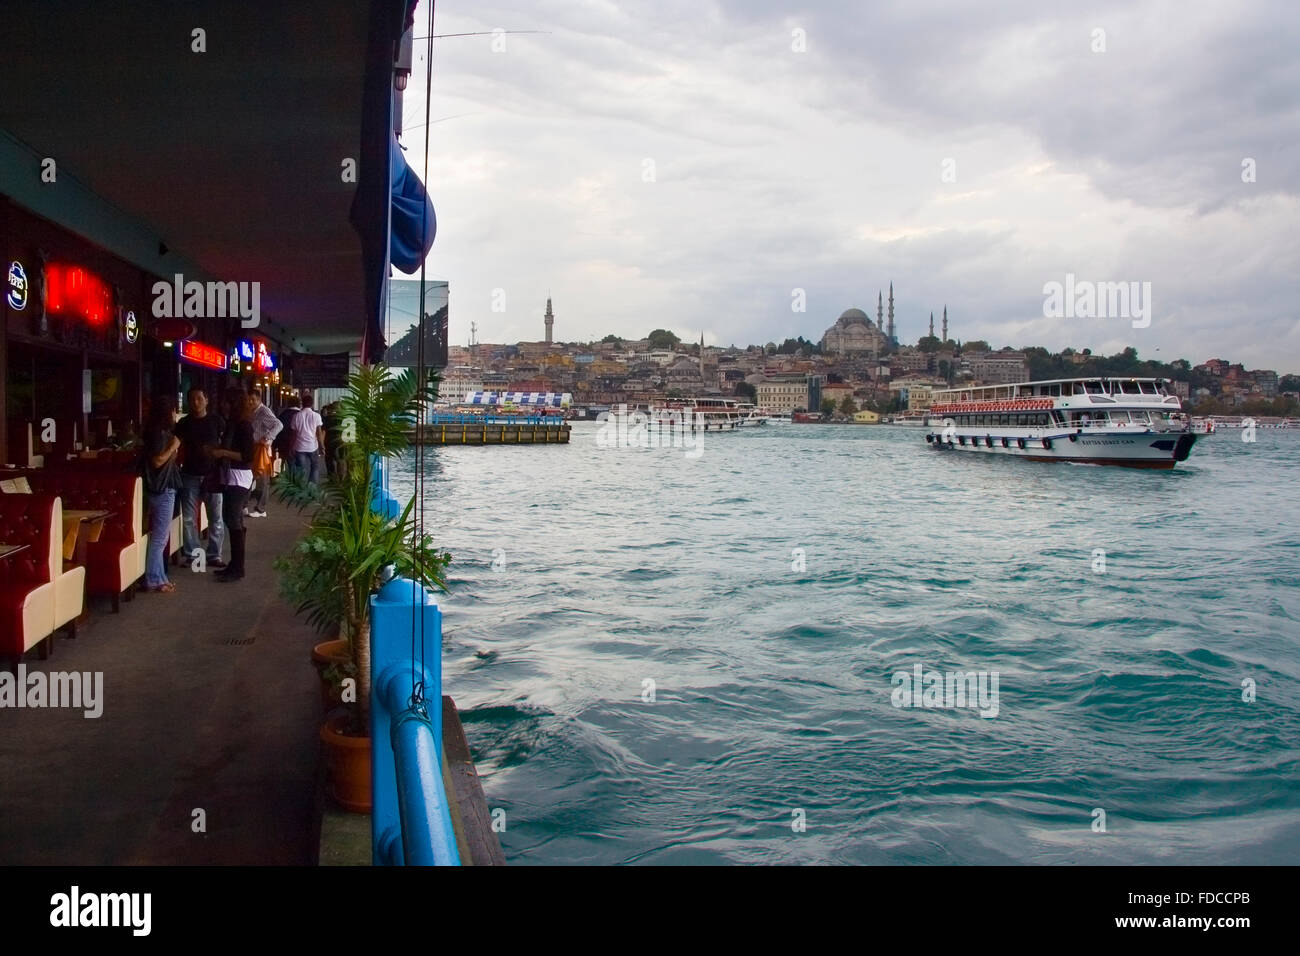 ISTANBUL, Turchia - SETTEMBRE 8: la gente parlare sotto il ponte Galata mentre le barche in esecuzione accanto a loro a settembre 8, 2009 a Istanbul, Foto Stock